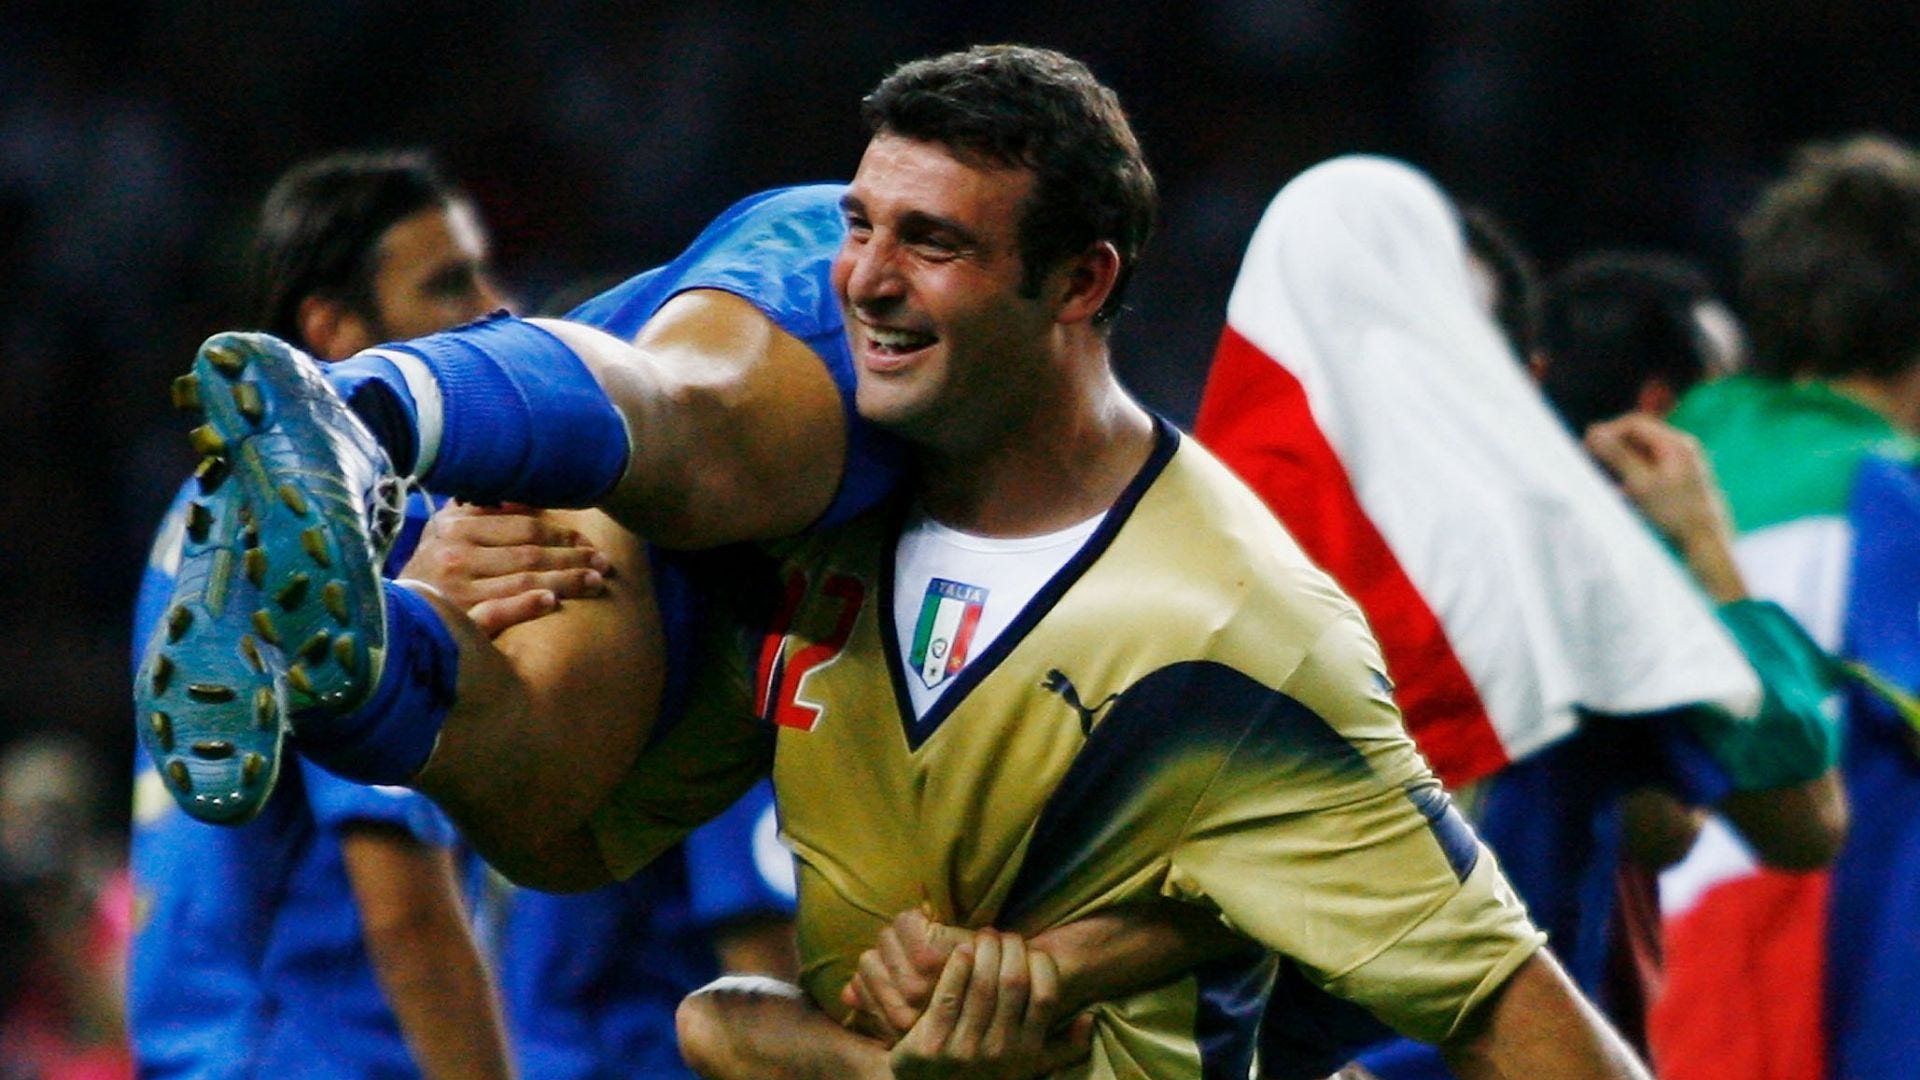 Times históricos: Itália 2006 - Calciopédia